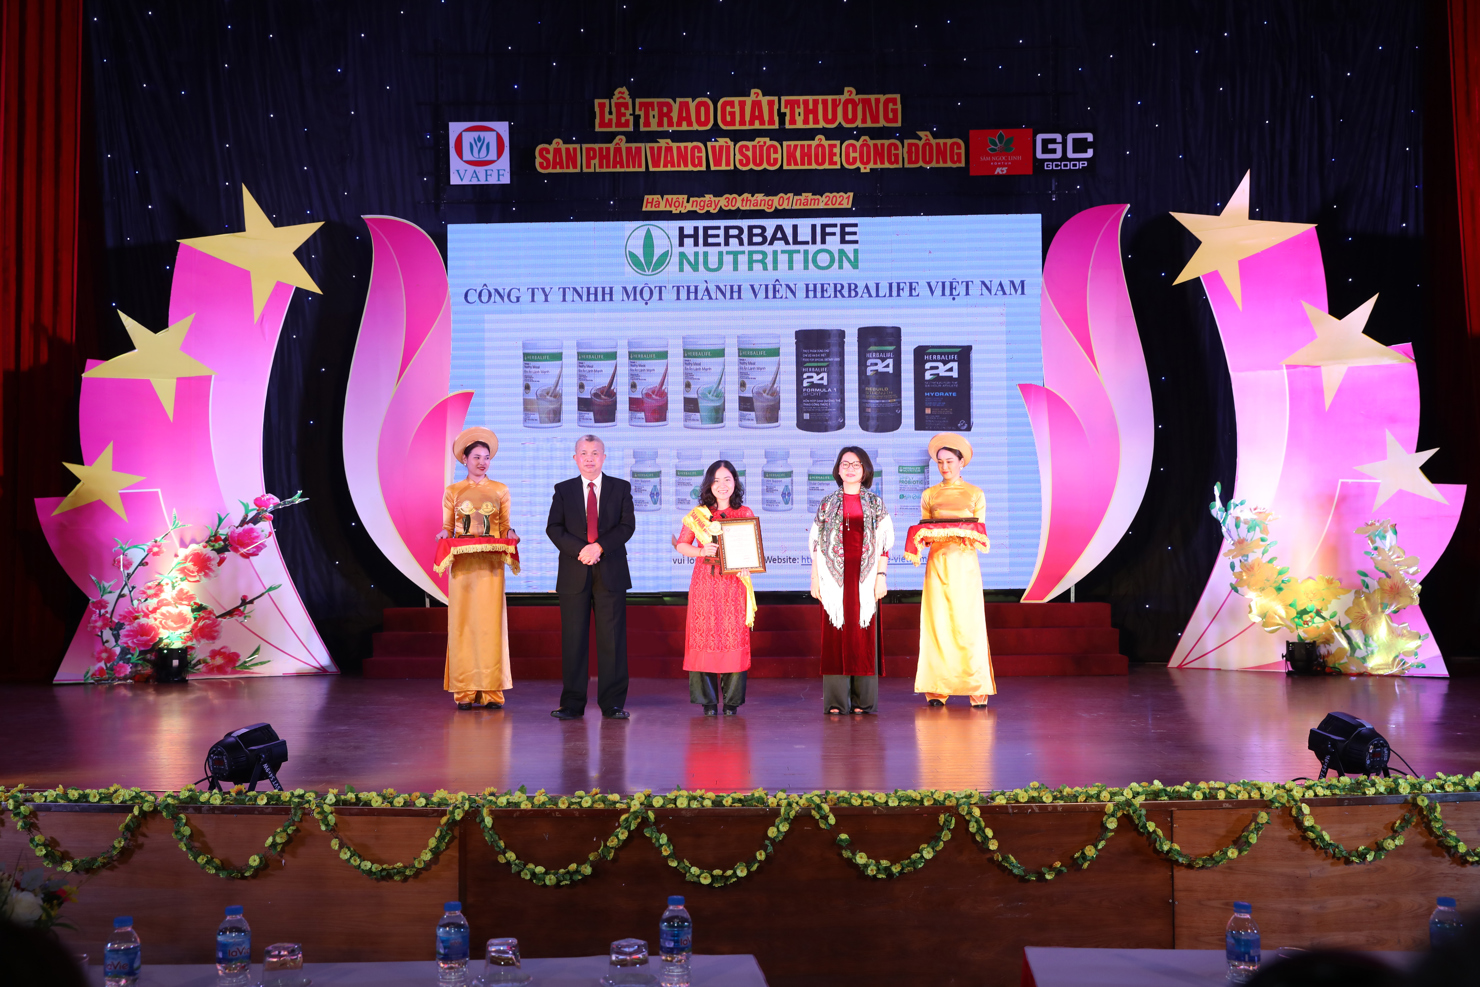 Công ty Herbalife Việt Nam vừa nhận giải thưởng uy tín “Sản phẩm vàng vì sức khỏe cộng đồng năm 2021”.